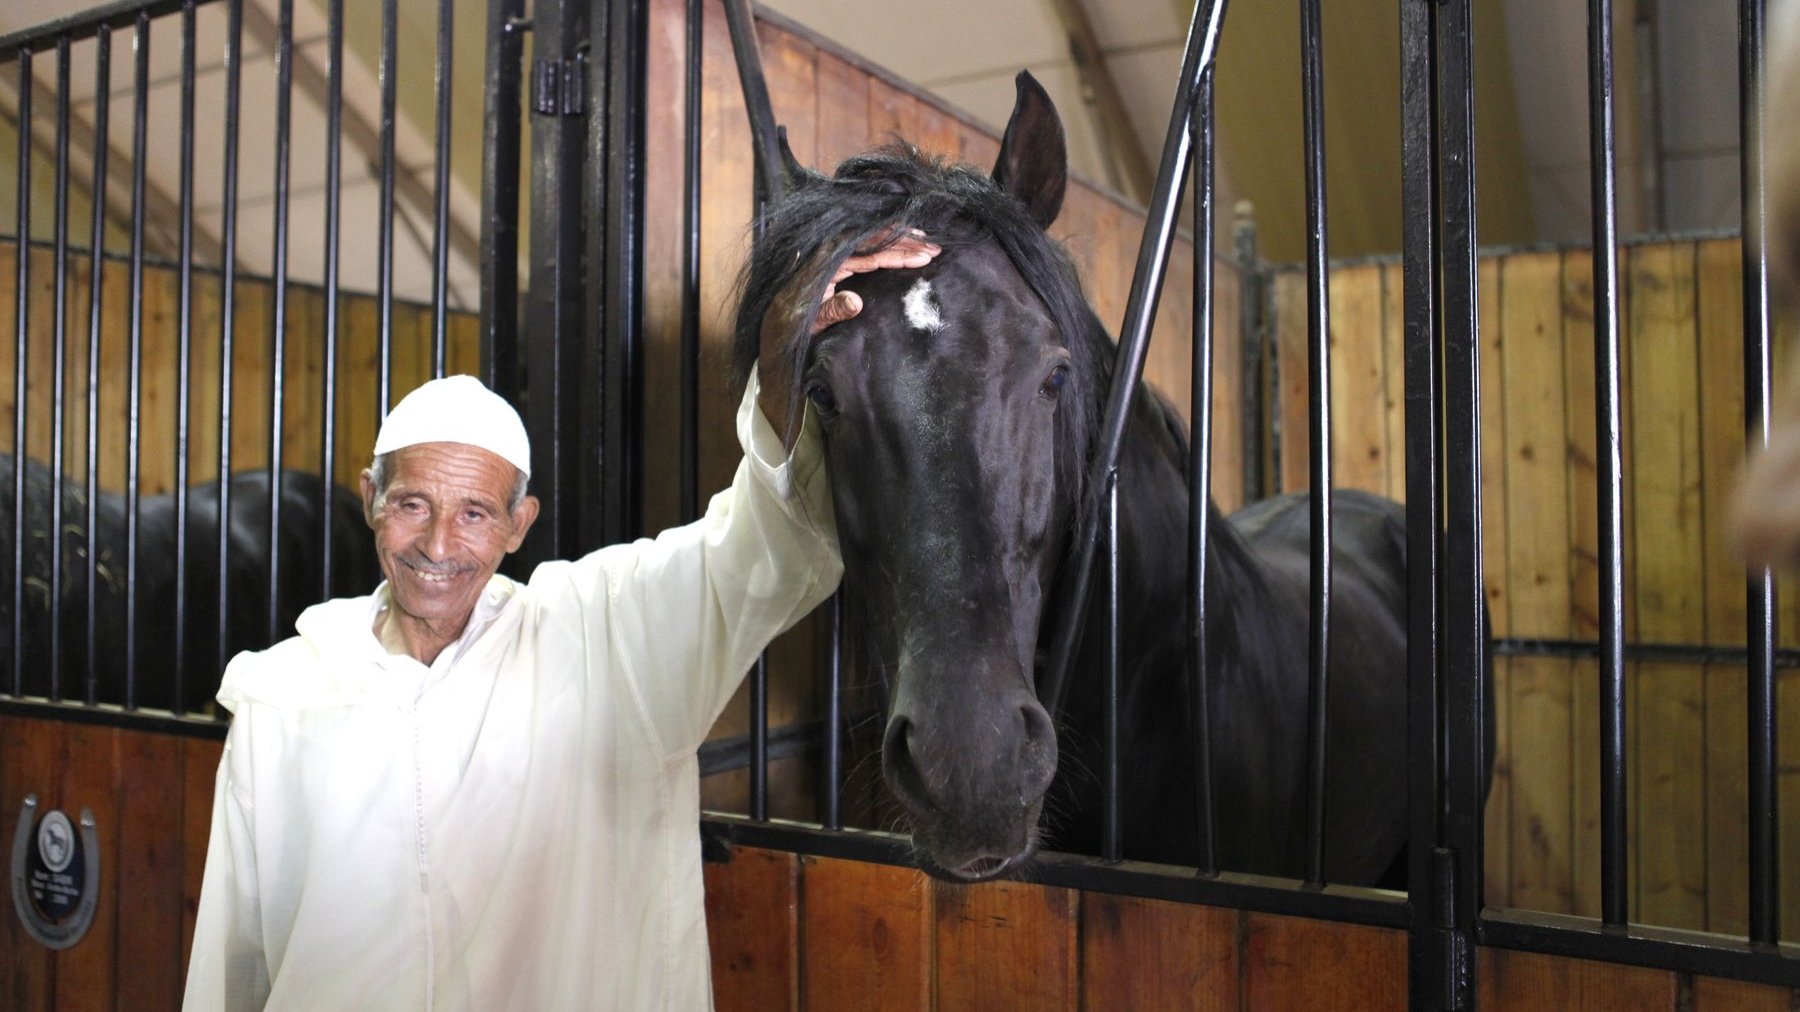 Le Salon d'El Jadida fête la noblesse du cheval et la place importante qu'il tient dans la culture marocaine. Un beau moment de complicité saisi ici par l'oeil du photographe et mettant merveilleusement en exergue le respect et l'amour que l'homme, dans ce pays, voue au cheval
